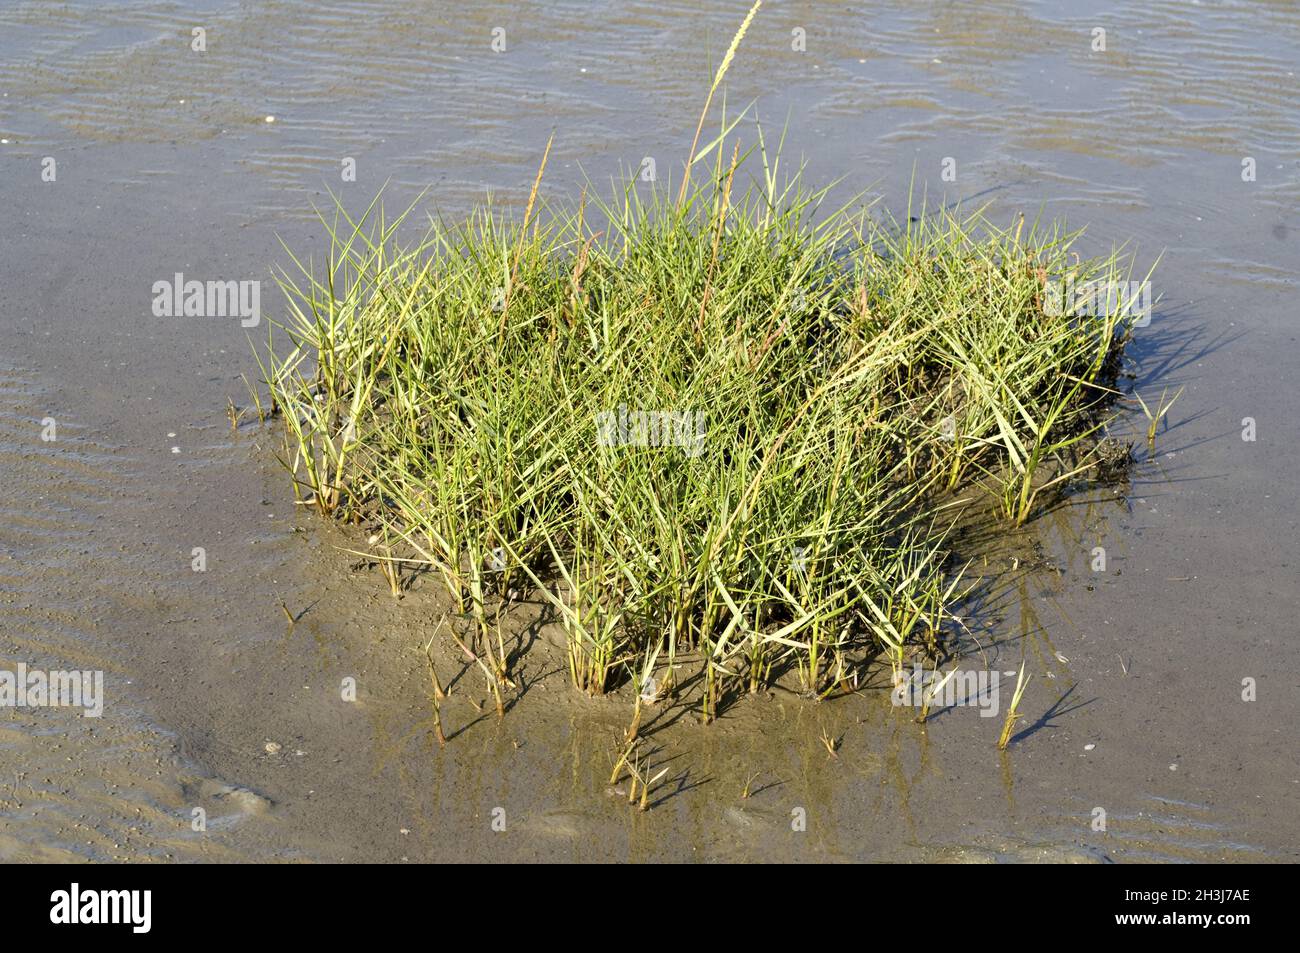 Mudgrass, salt mudgrass, Spartina anglica, Stock Photo